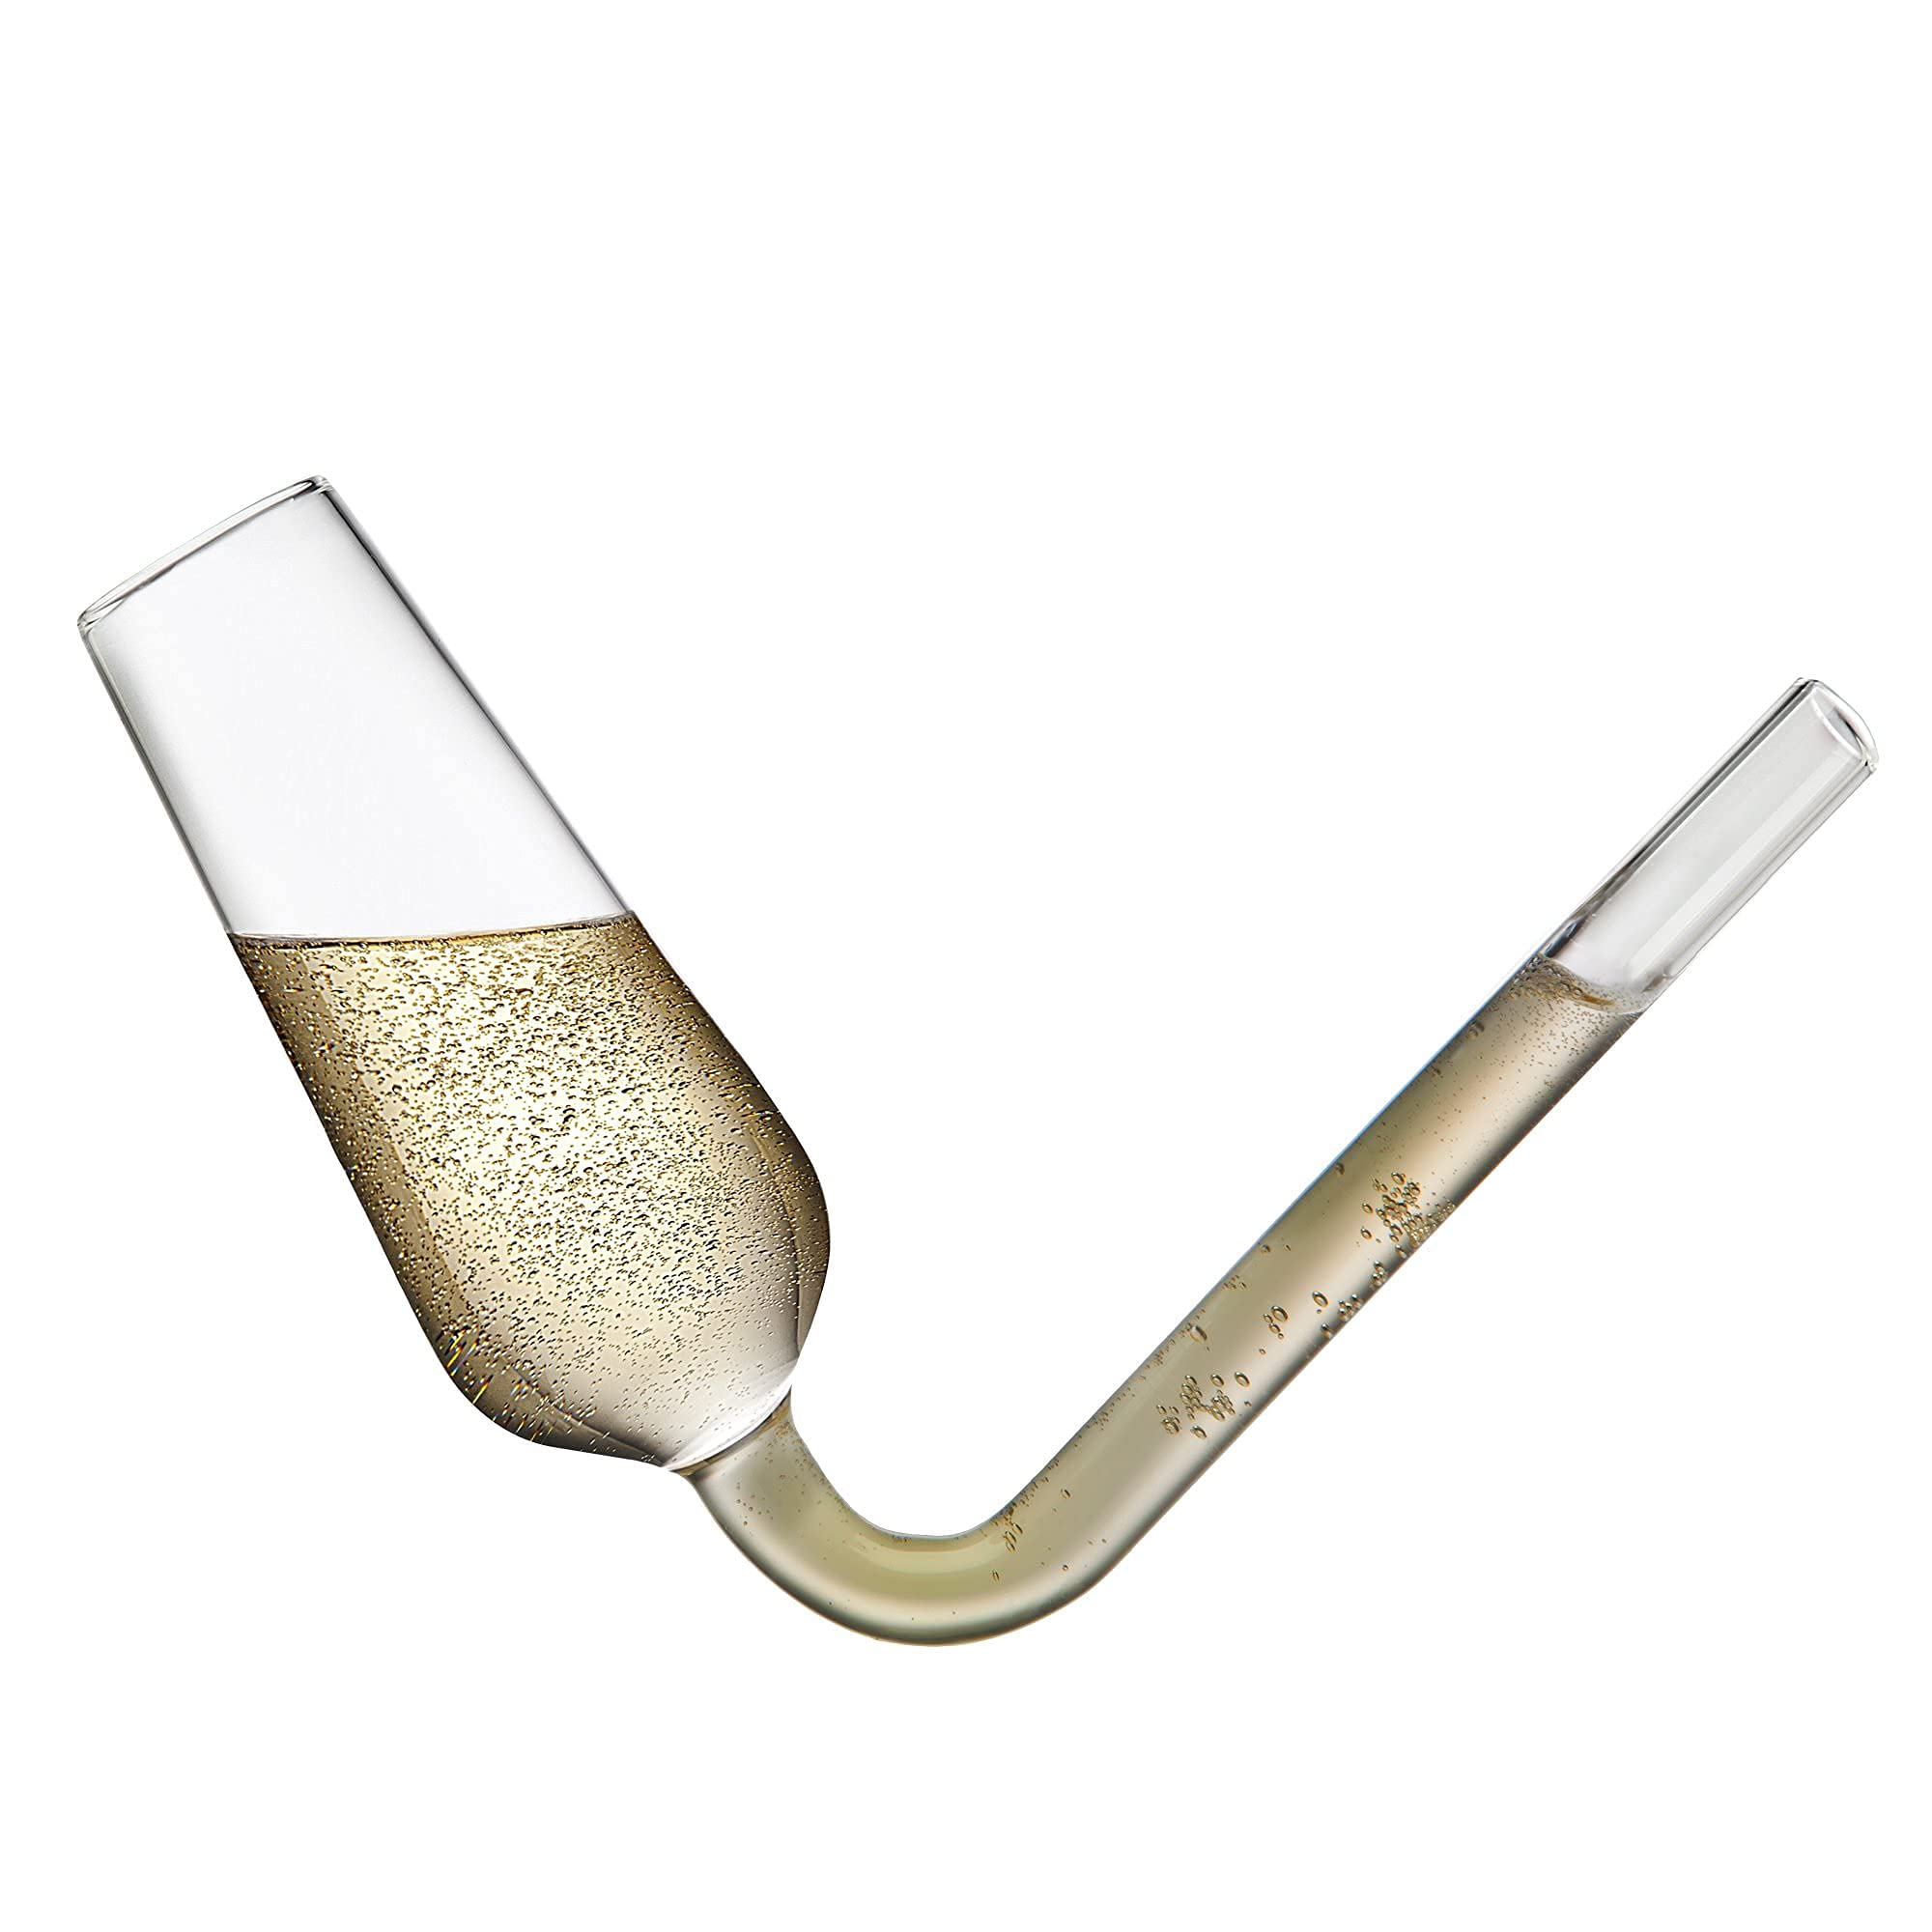 Godinger Champagne Flutes Guzzler Glasses, Champagne Glasses, Champagne Flute Shooters, The Champagne Glass to Chug Champagne, White Elephant Gifts - Set of 2